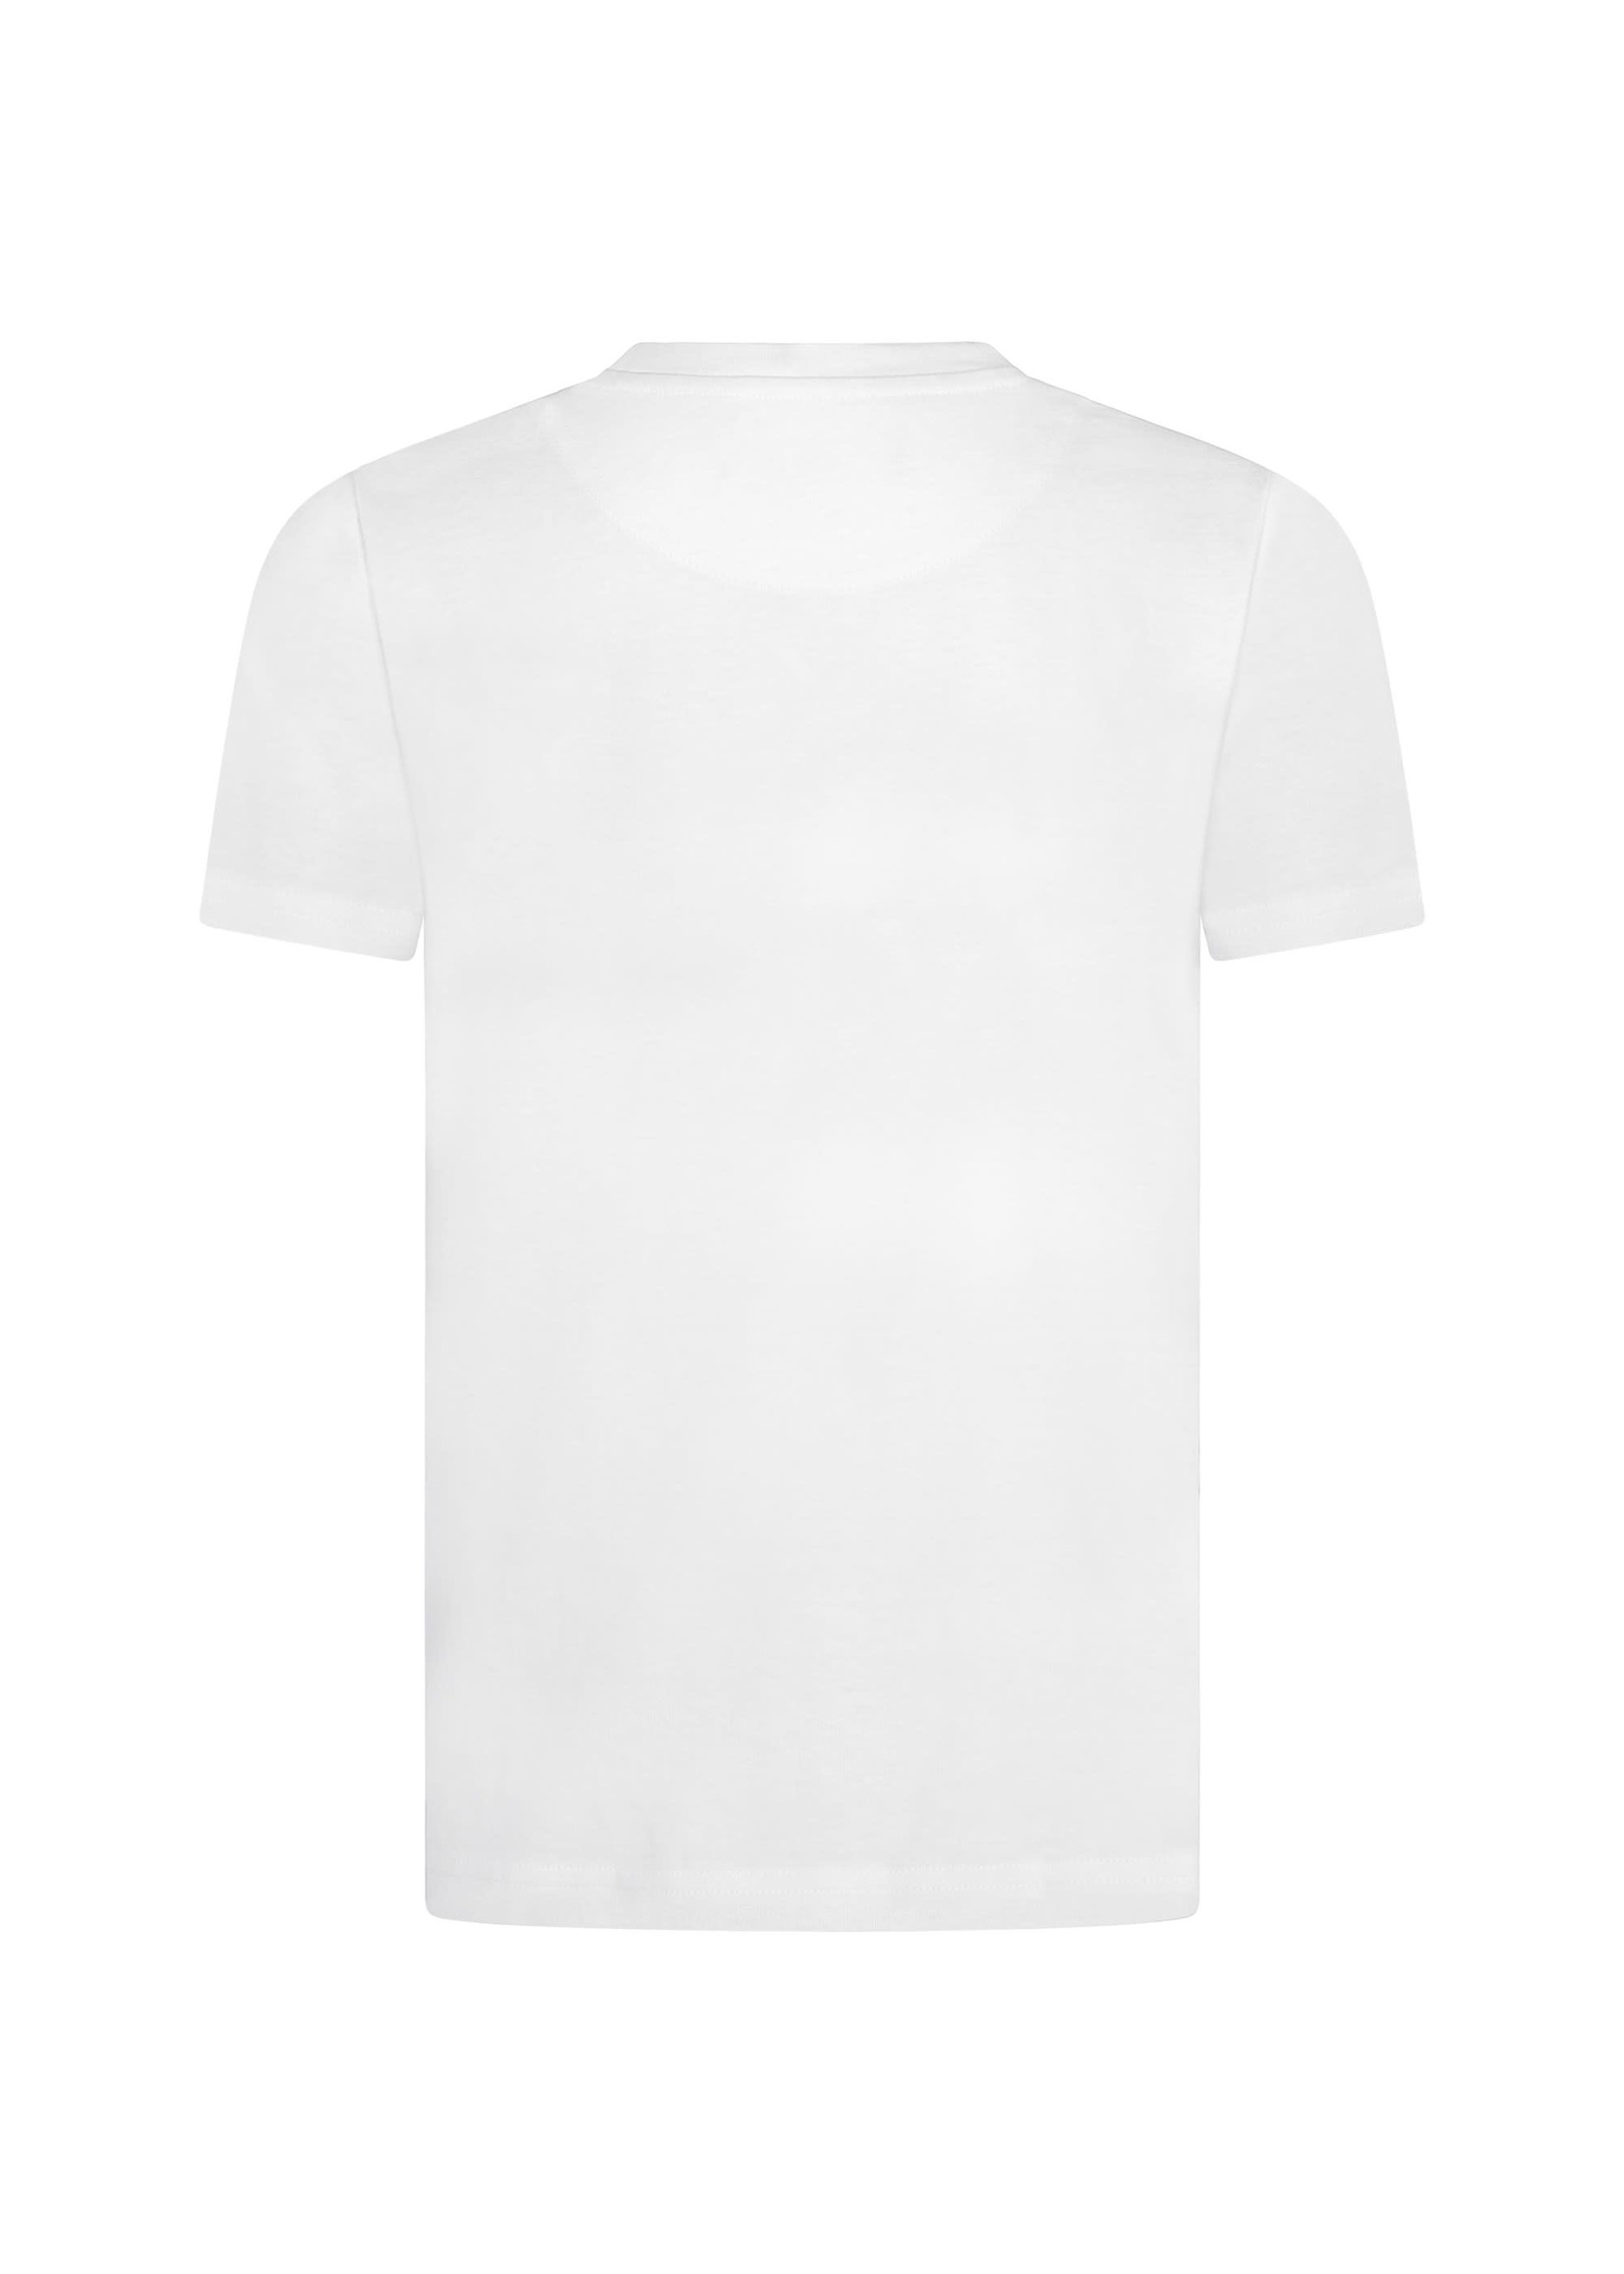 Lyle & Scott Lyle & Scott t-shirt white - TSB2000V 626